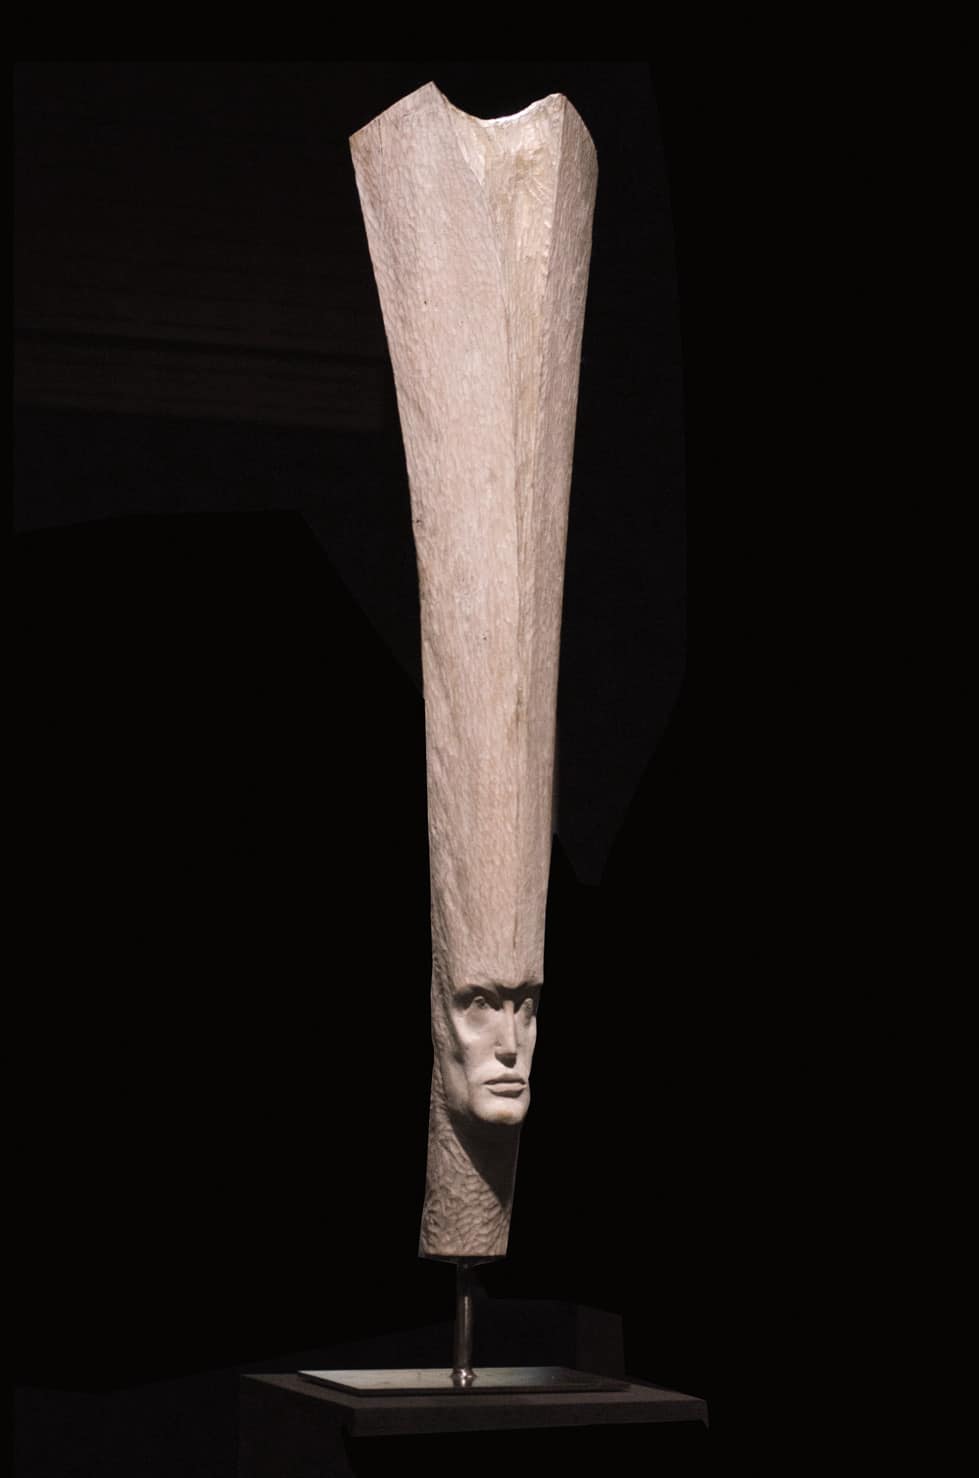 " Vertical White", marronnier, 24 x 15 x 110 cm, 2017 - Pièce unique